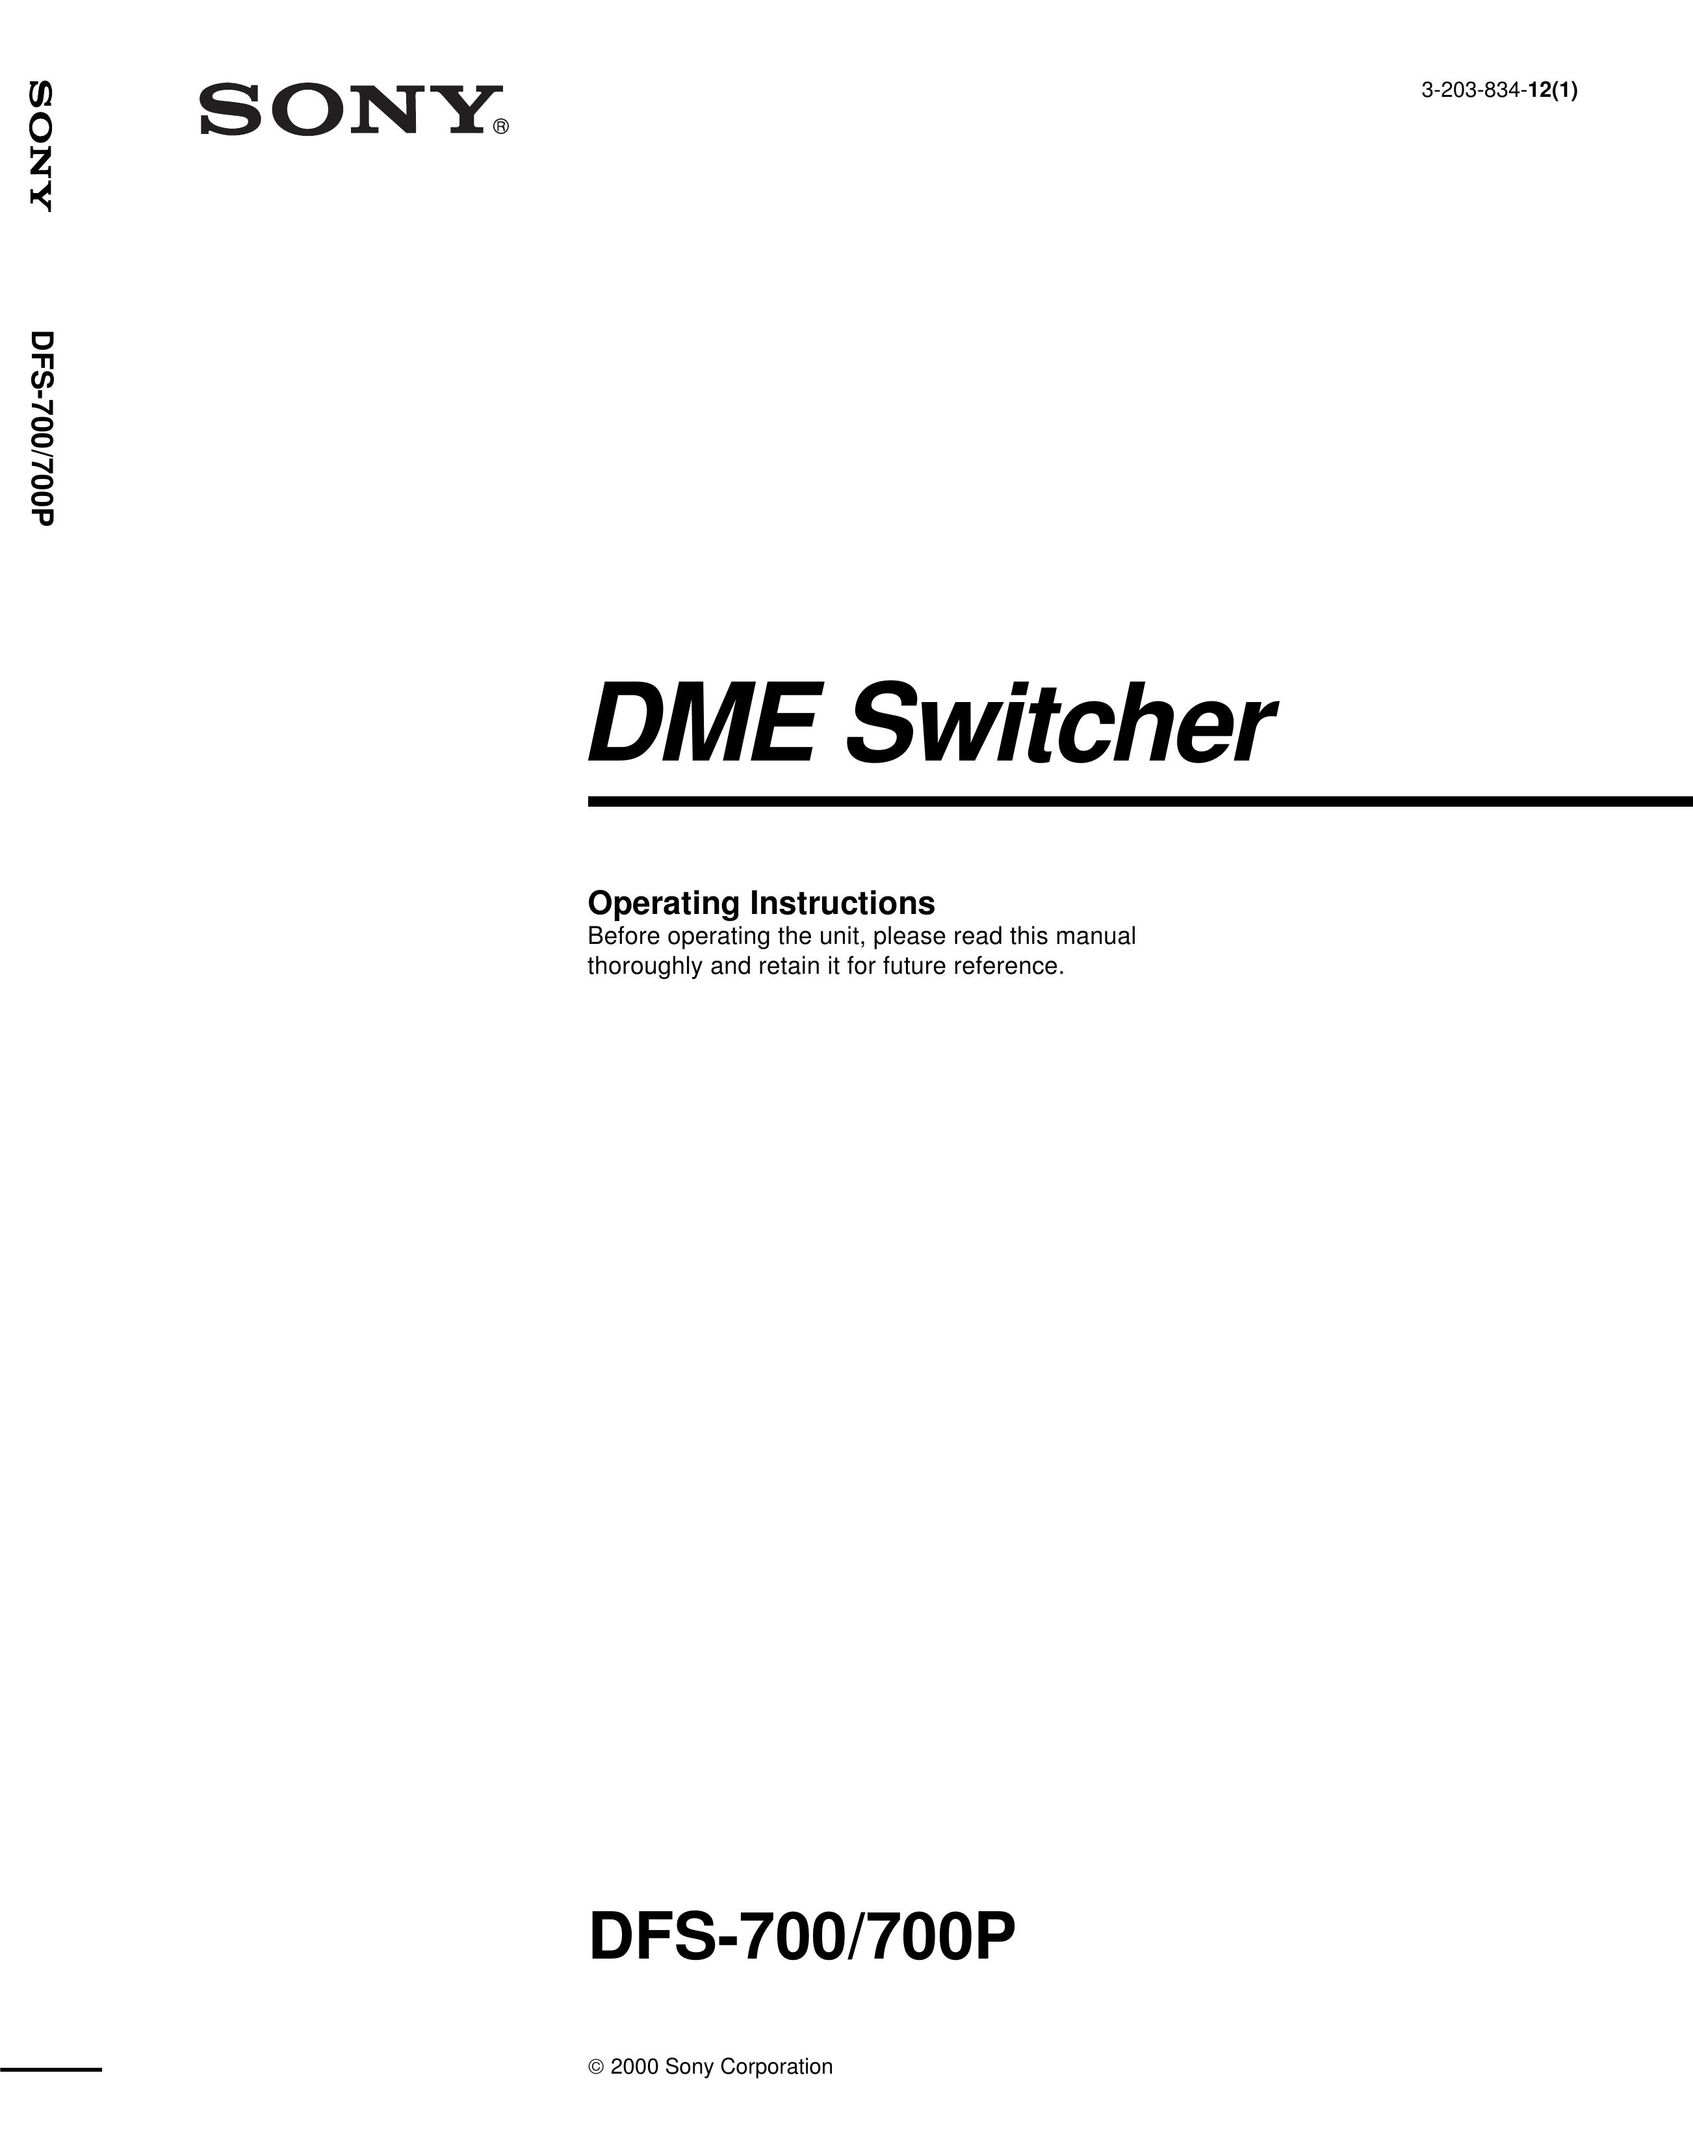 Sony DFS-700 Switch User Manual